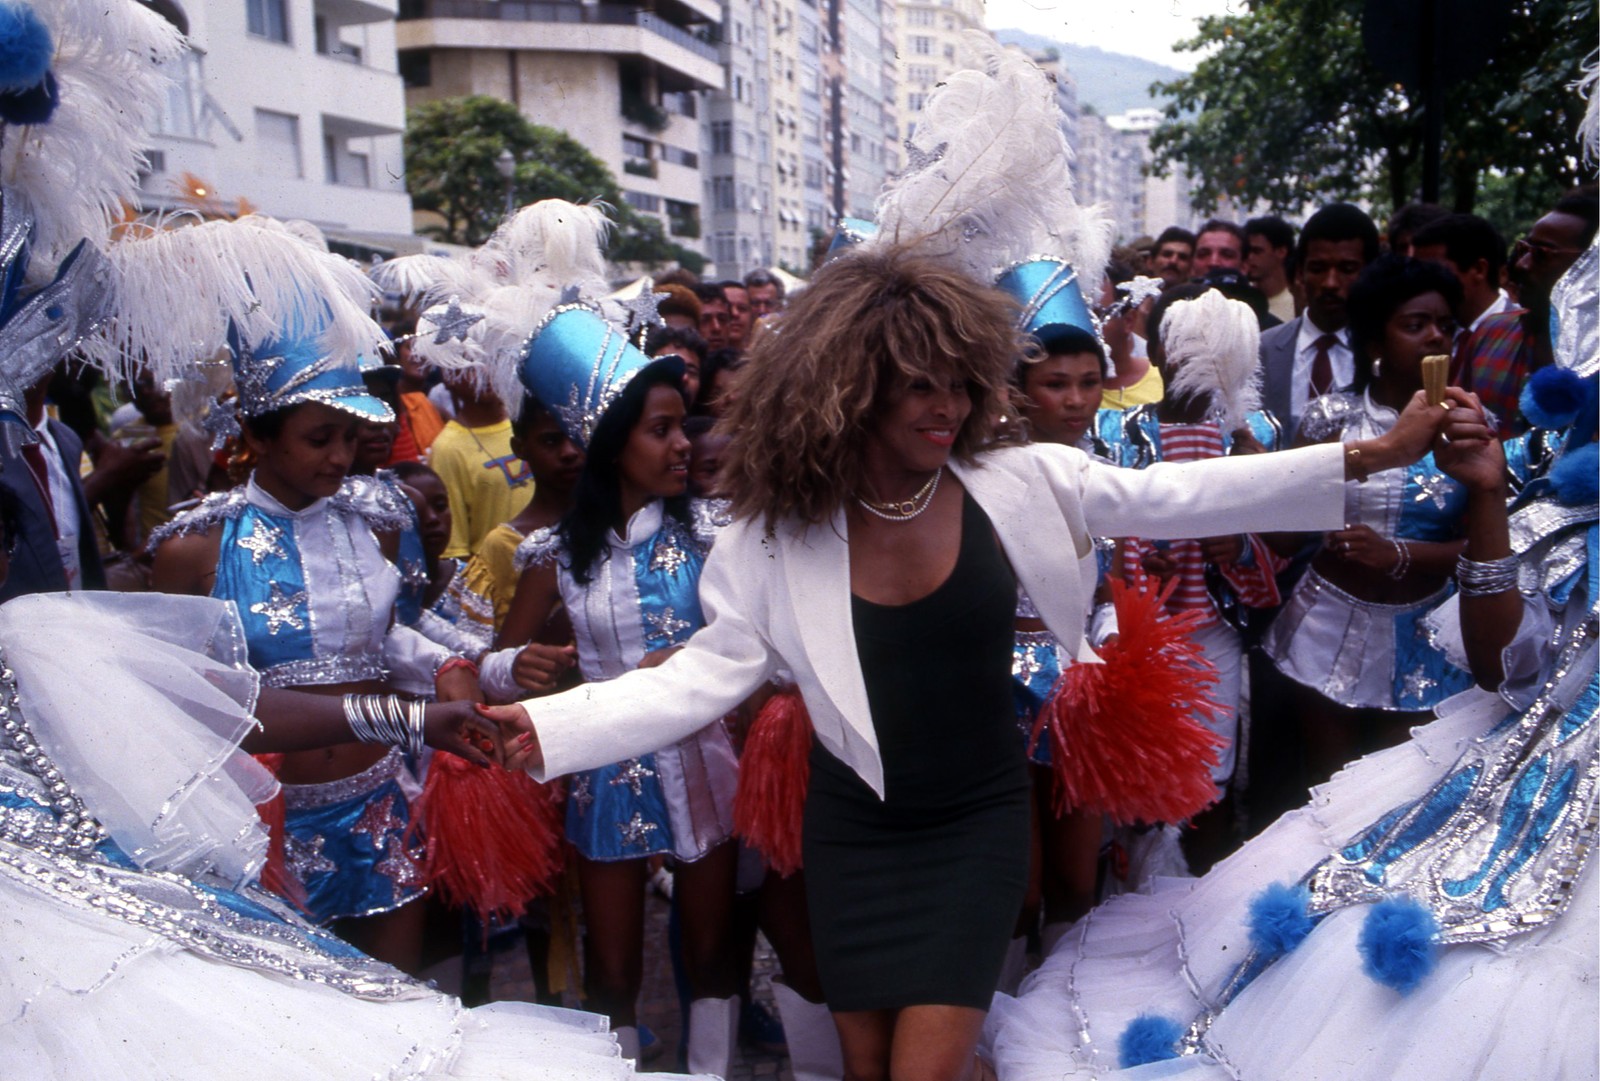 Tina Turner dança com integrantes da Escola de Samba Beija-Flor, que realizou uma homenagem em frente ao hotel onde a cantora estava hospedada, em Copacabana, em 1987  — Foto: Hipólito Pereira / Agência O Globo